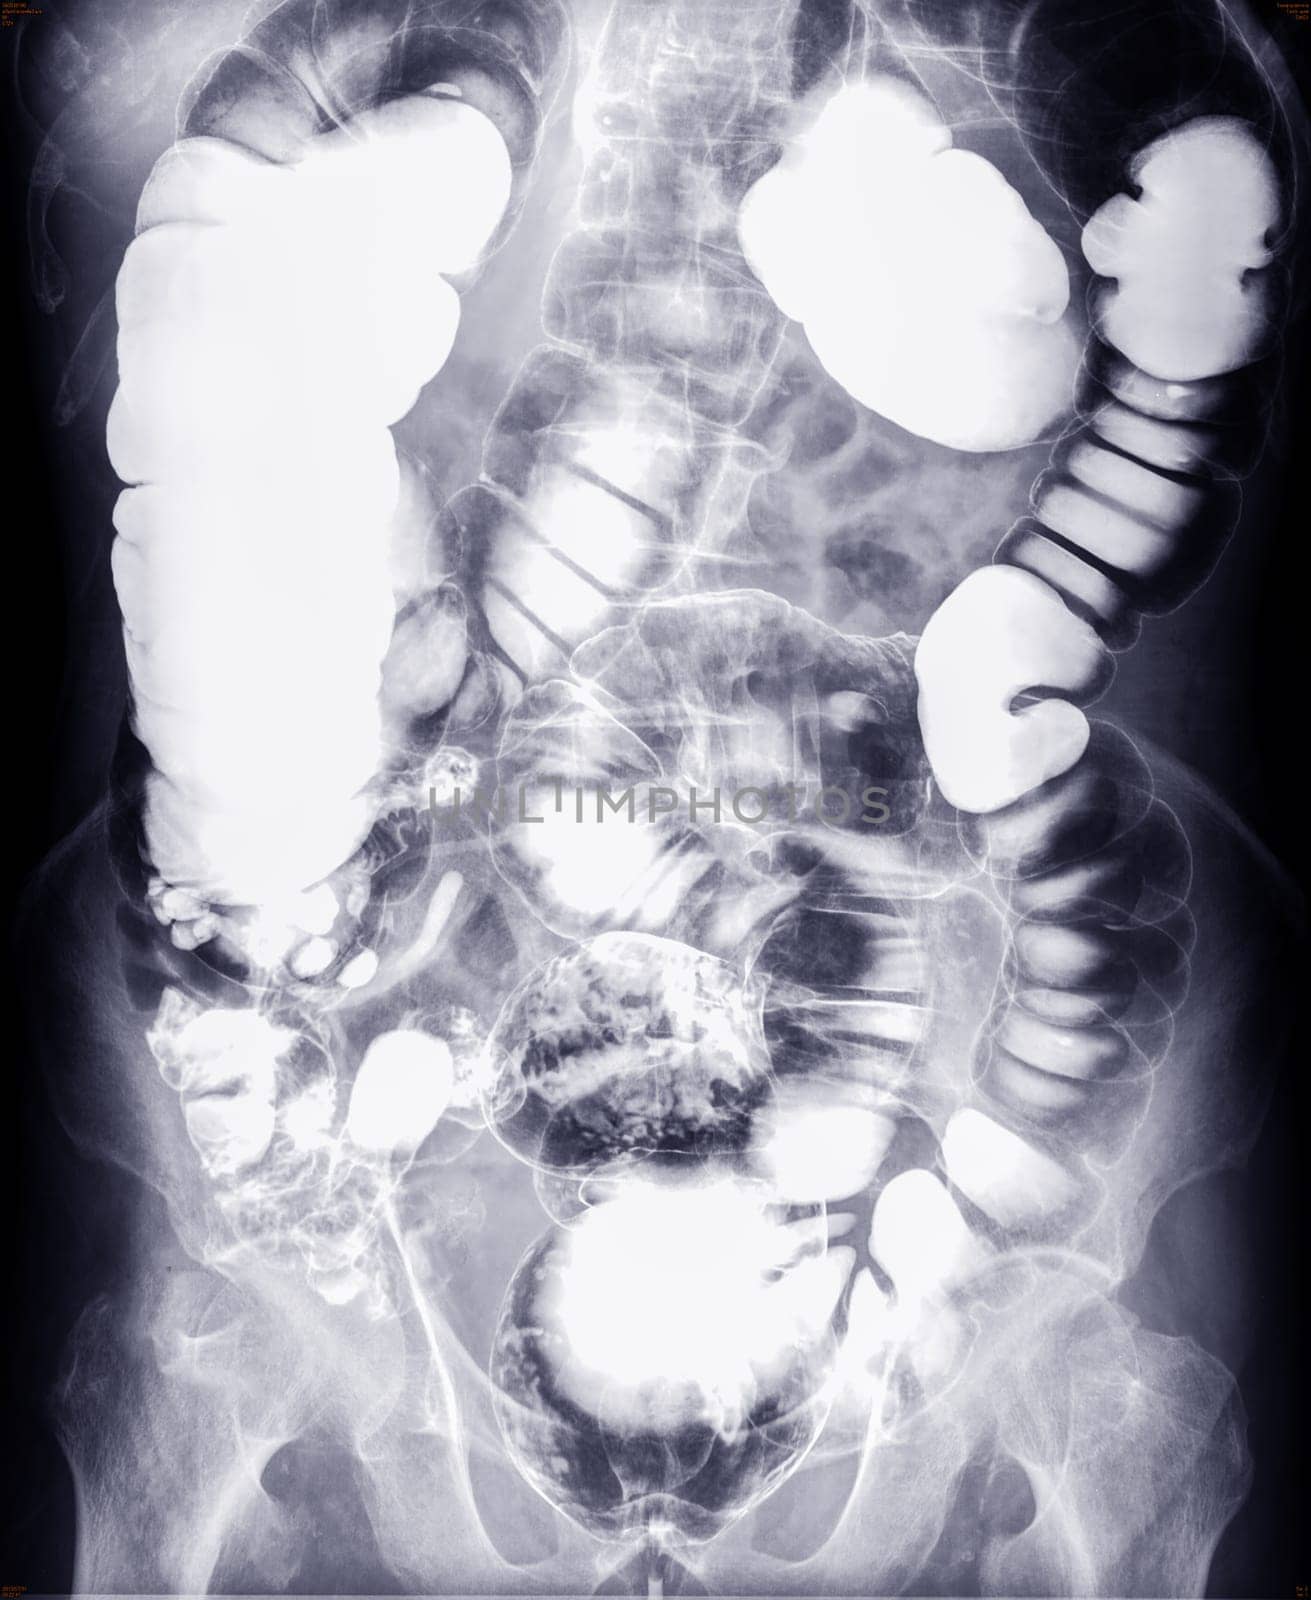 Barium enema study image or x-ray image of large intestine .